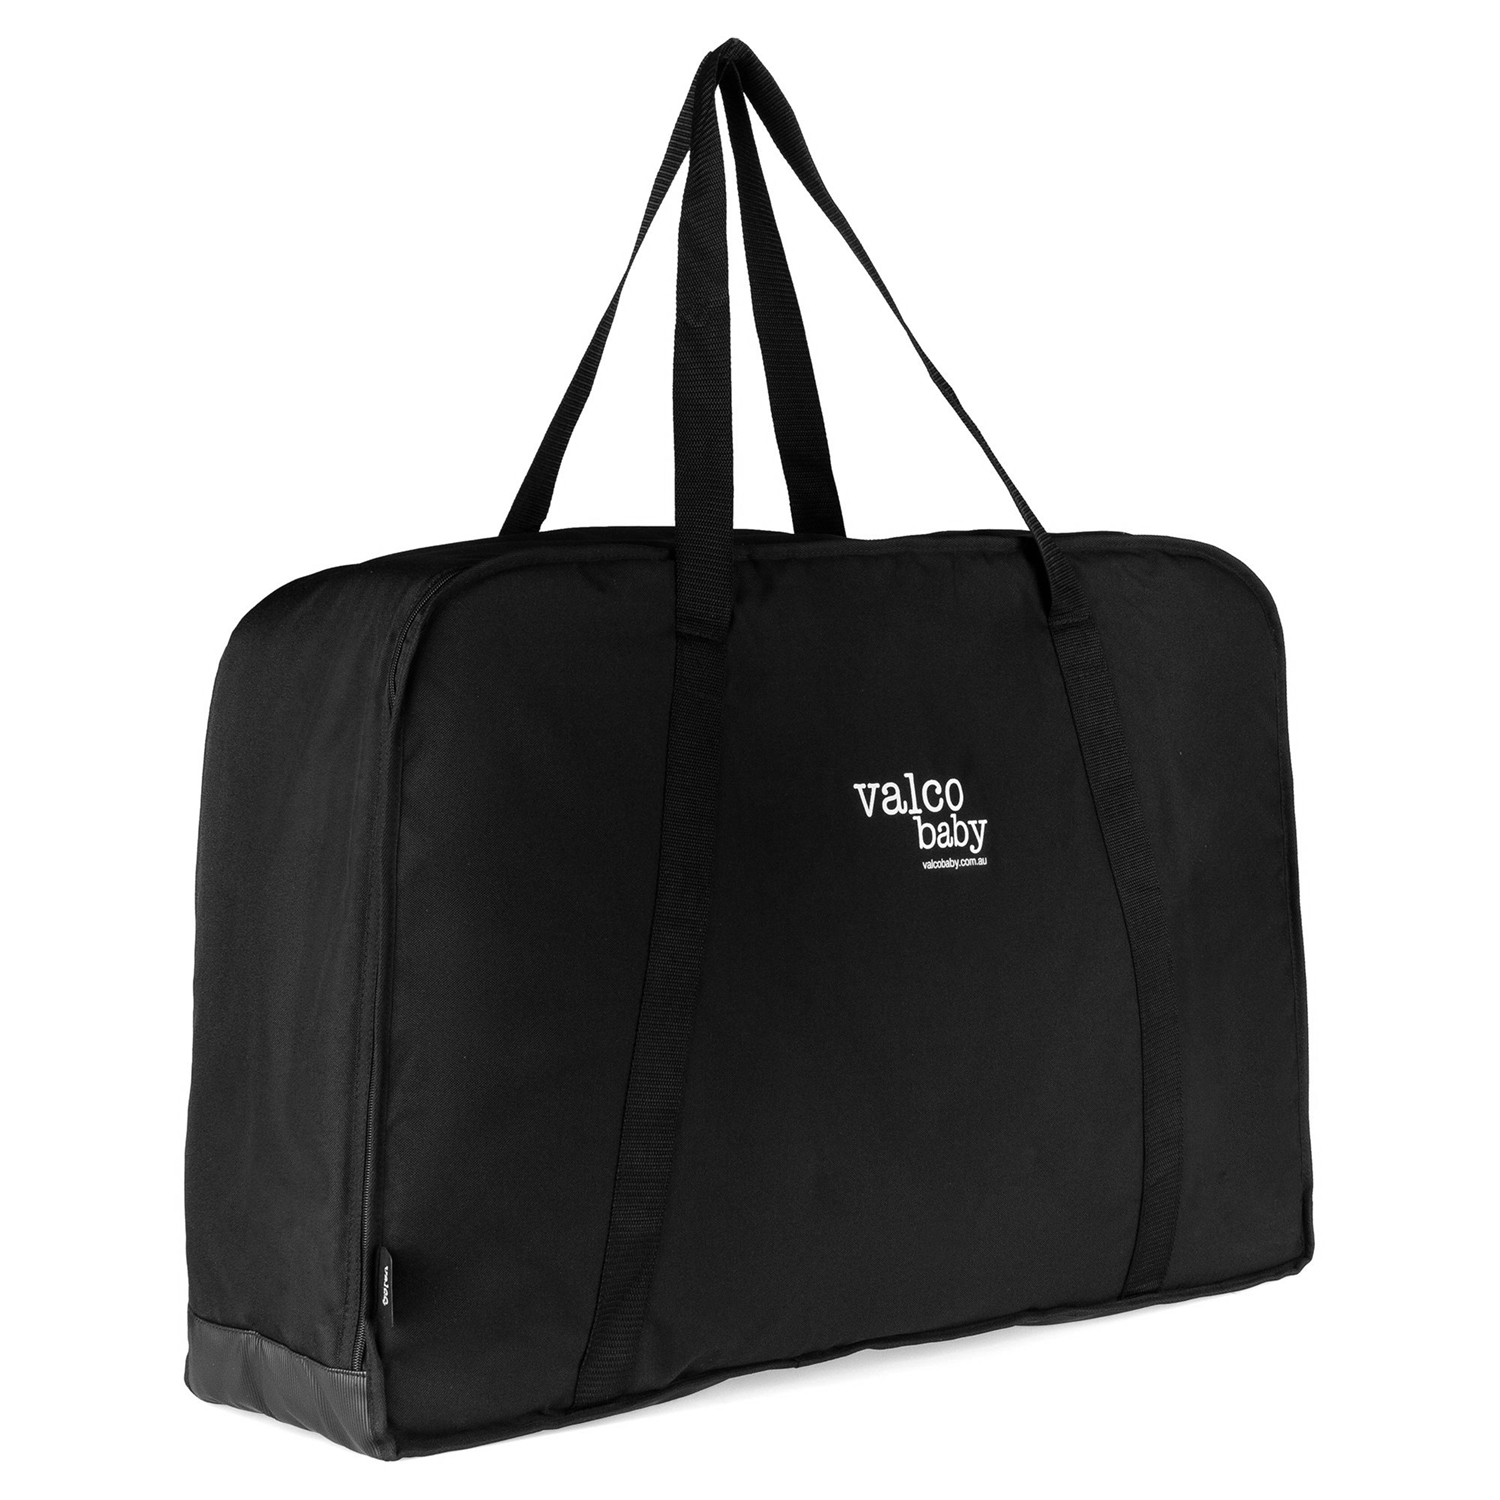 Сумка для перевозки коляски Storage Pram Bag Valco Baby doona сумка для путешествий для автокресла коляски doona